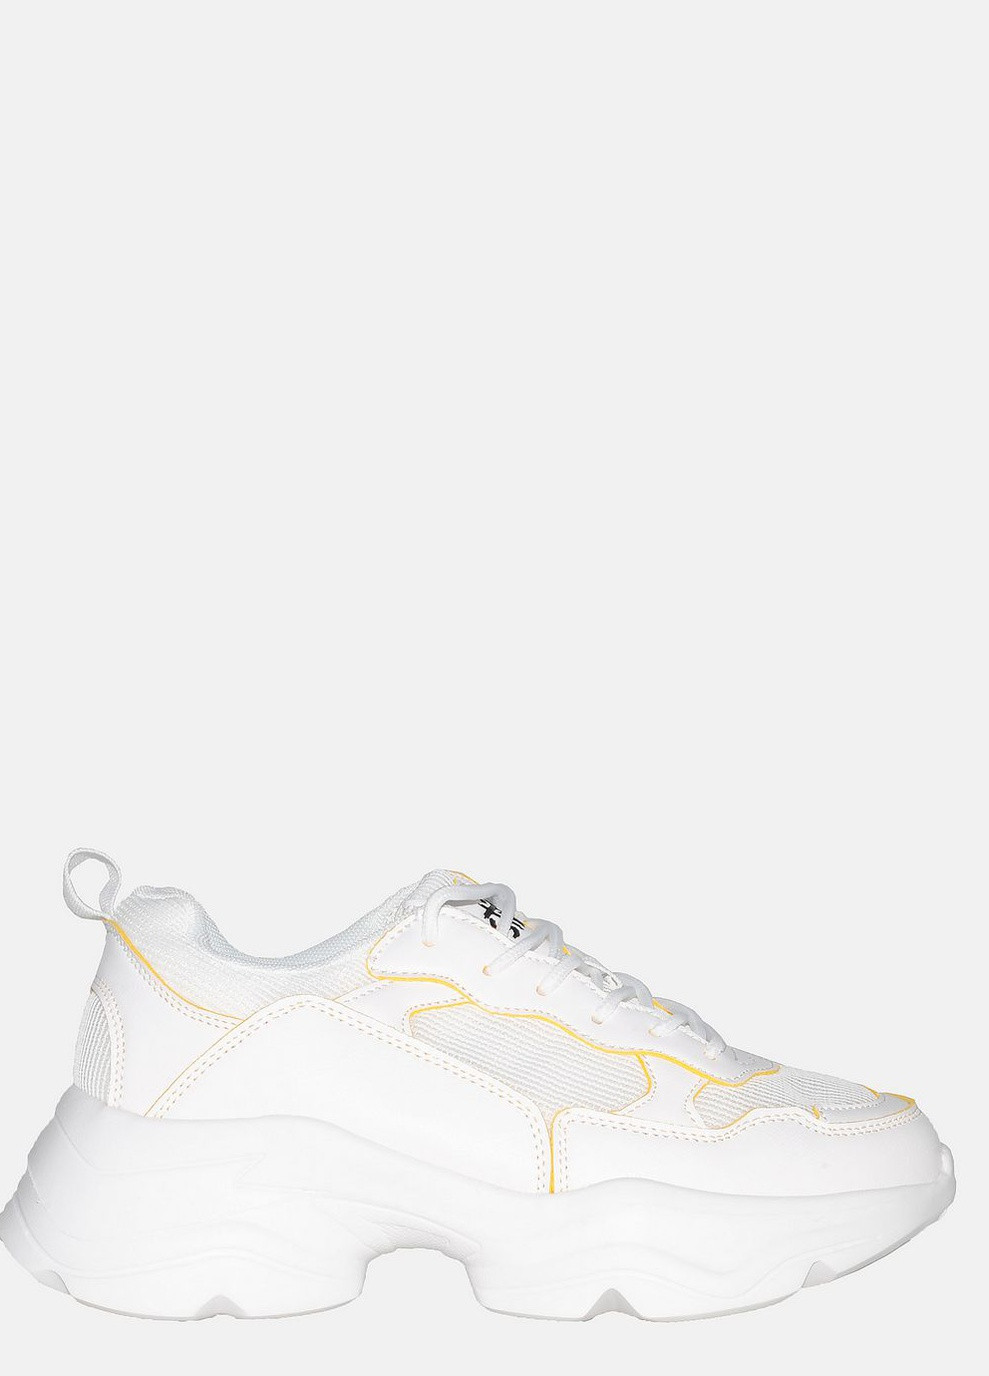 Білі осінні кросівки st3800-8 white-yellow Stilli